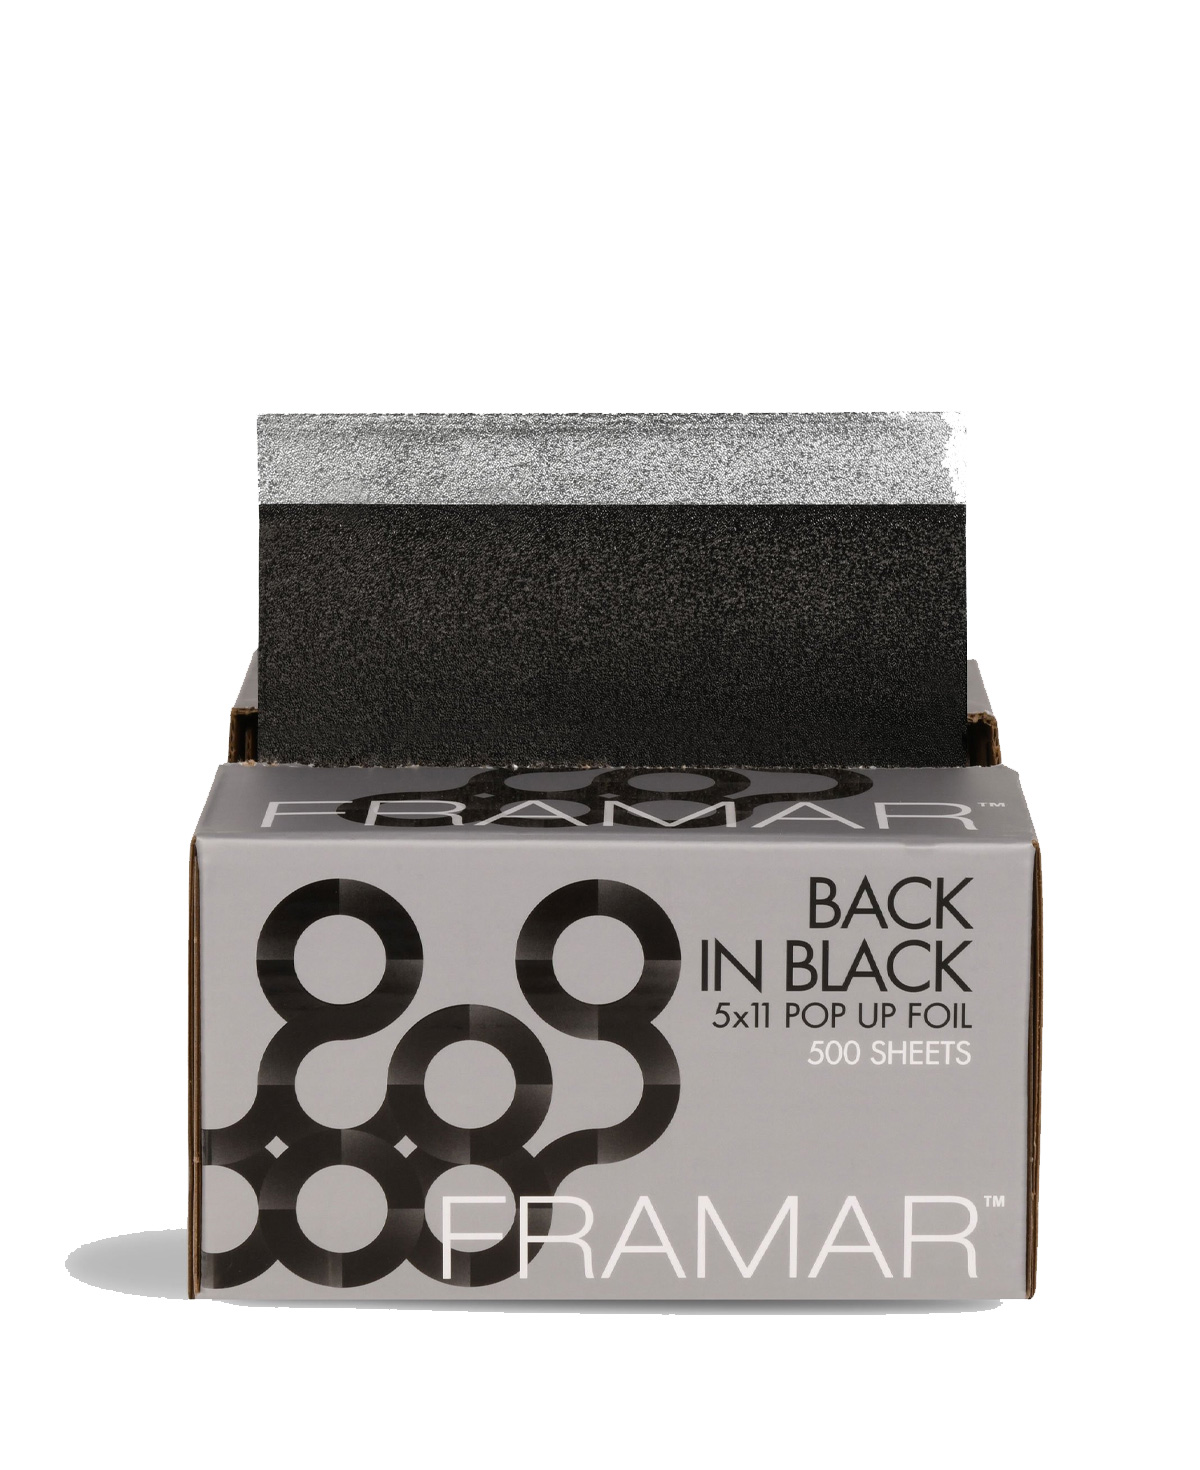 Framar 5x11 Pop Ups Back in Black 500 Sheets